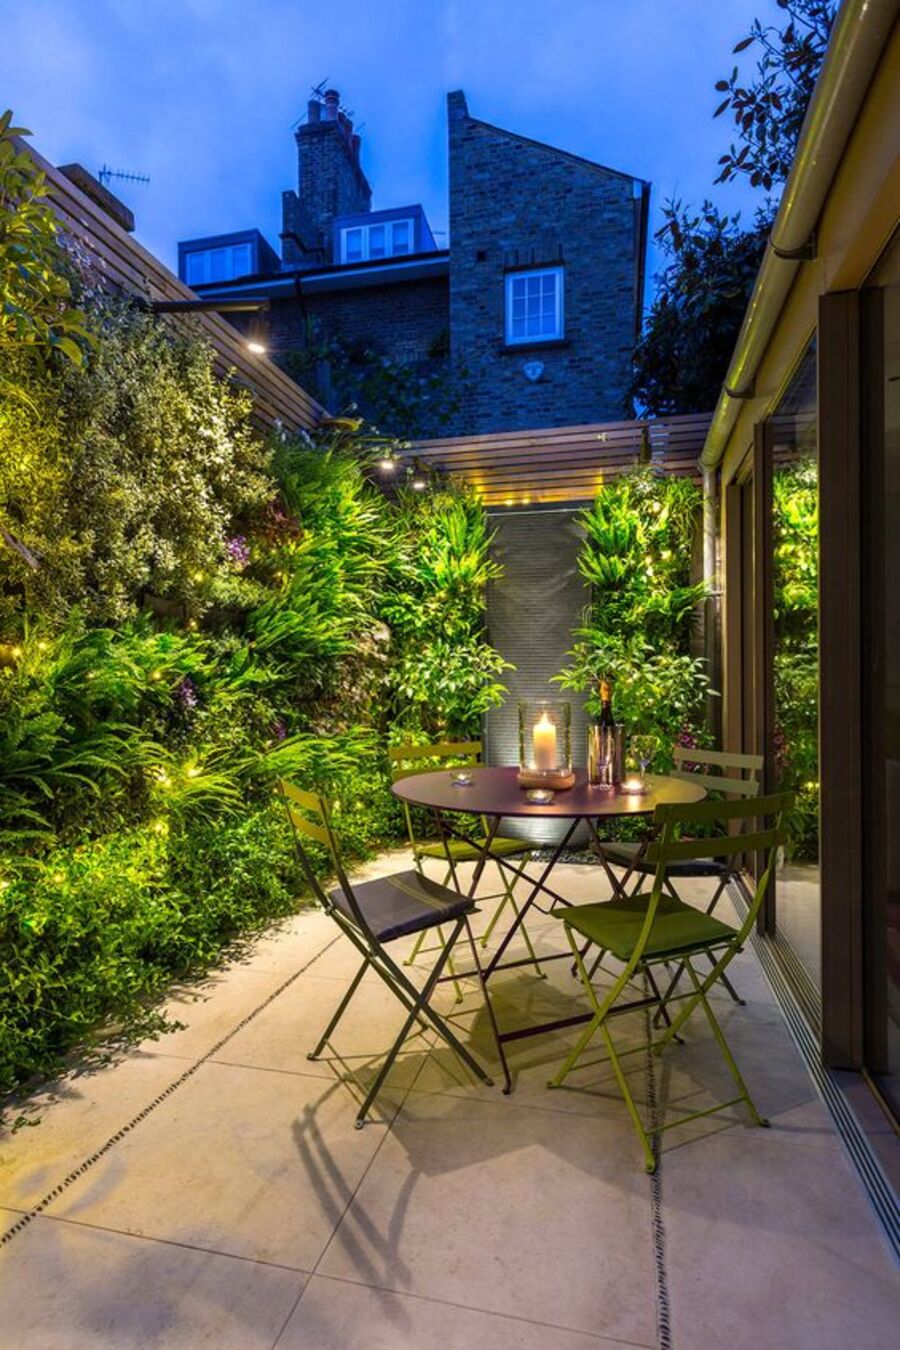 Terraza de una casa con jardines verticales y algunas luces que iluminan el atardecer. A un costado de las plantas hay una mesa de comedor con cuatro sillas metálicas verdes.